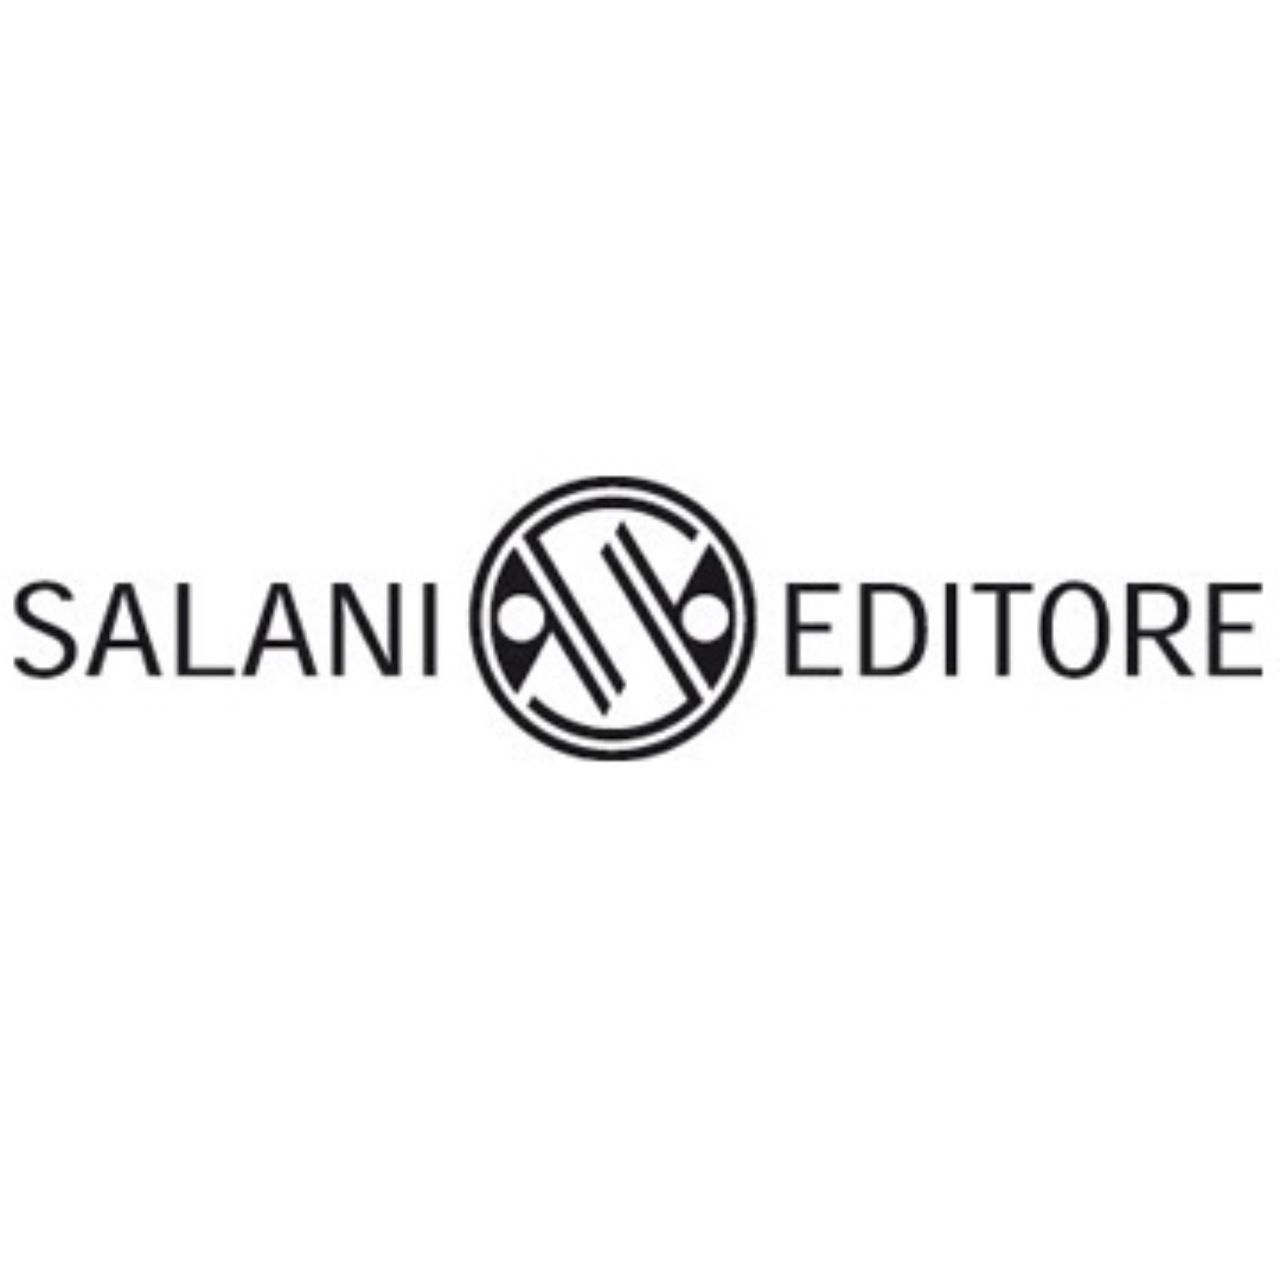 Salani editore compie 160 anni